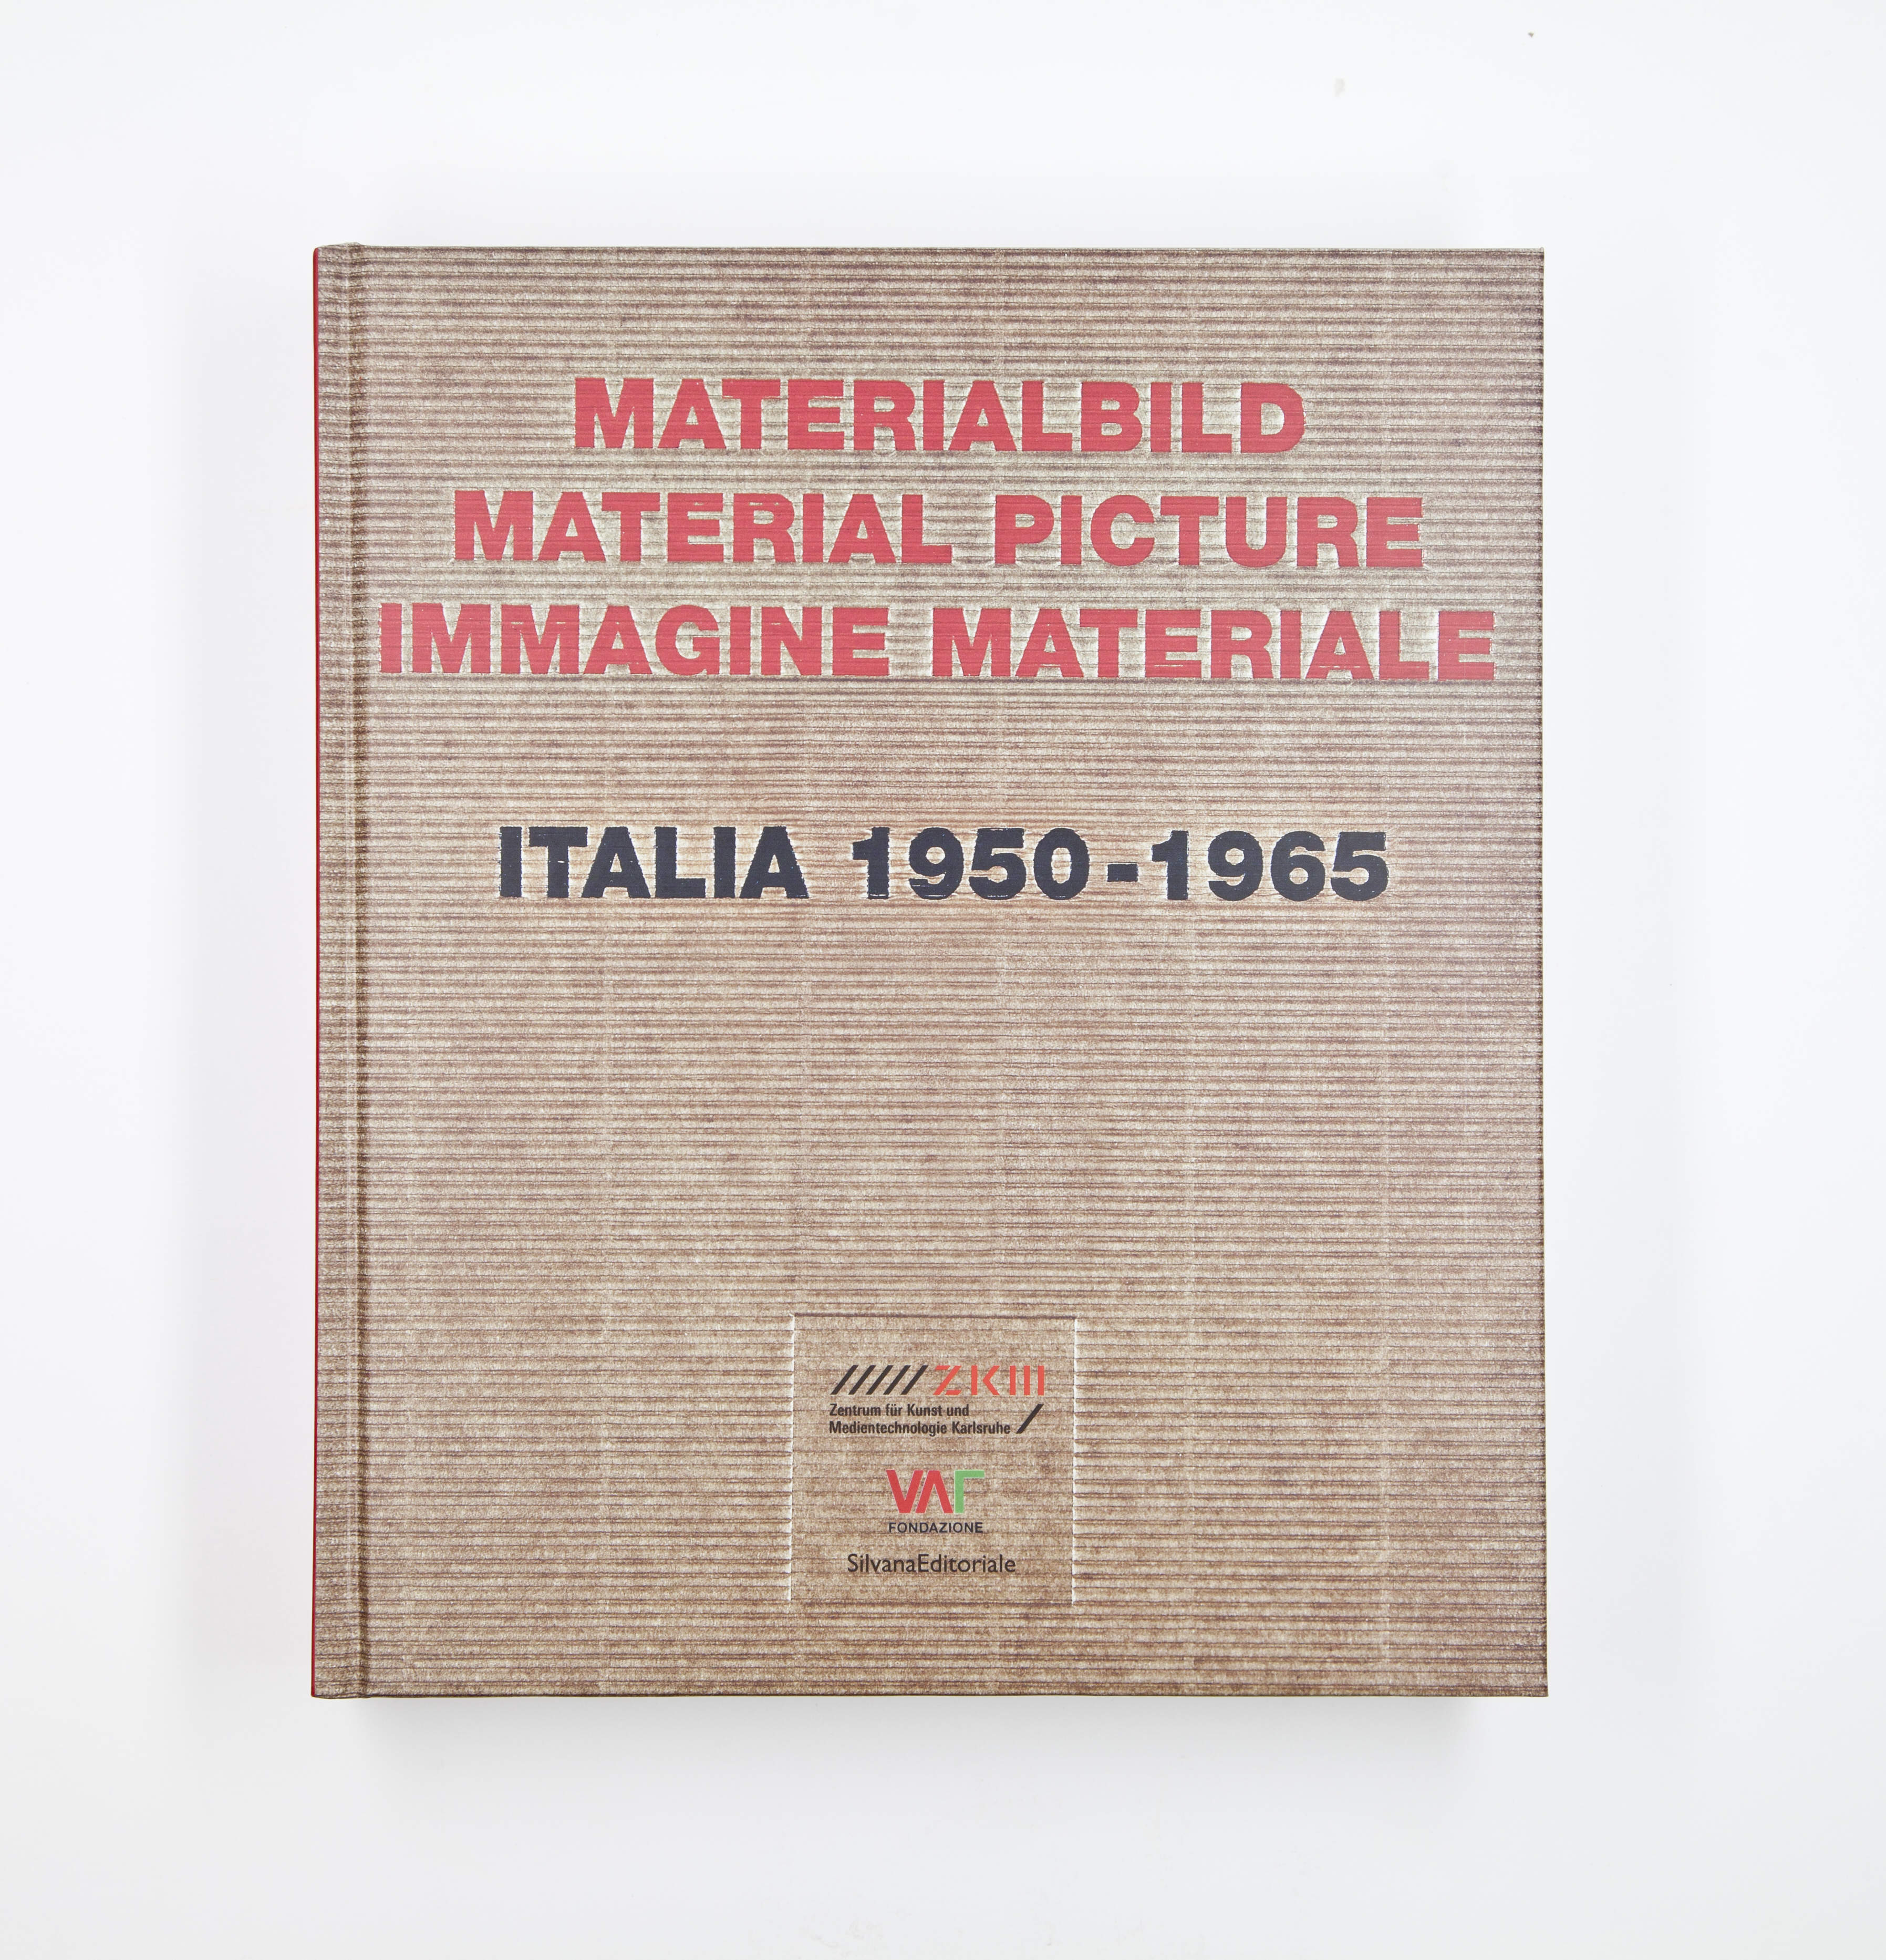 Materialbild / Material picture / Immagine materiale